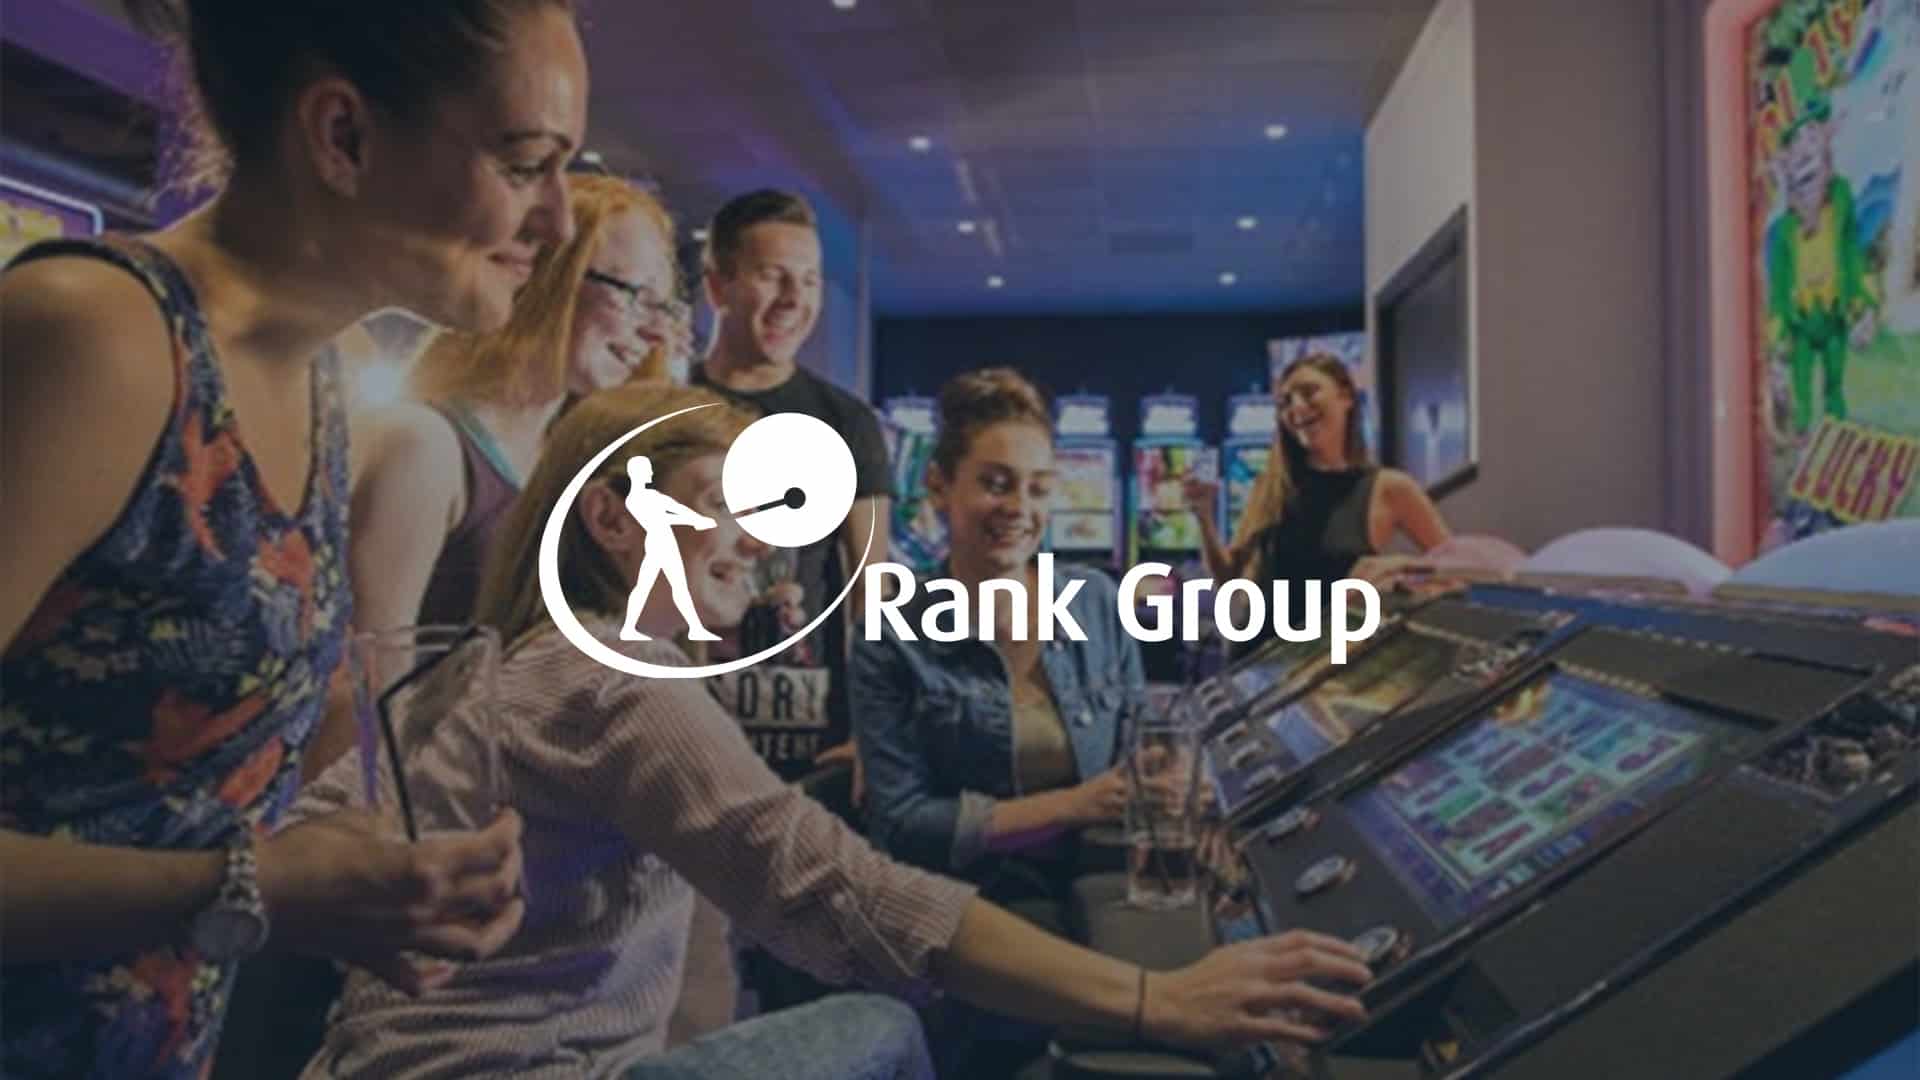 Success at The Rank Group